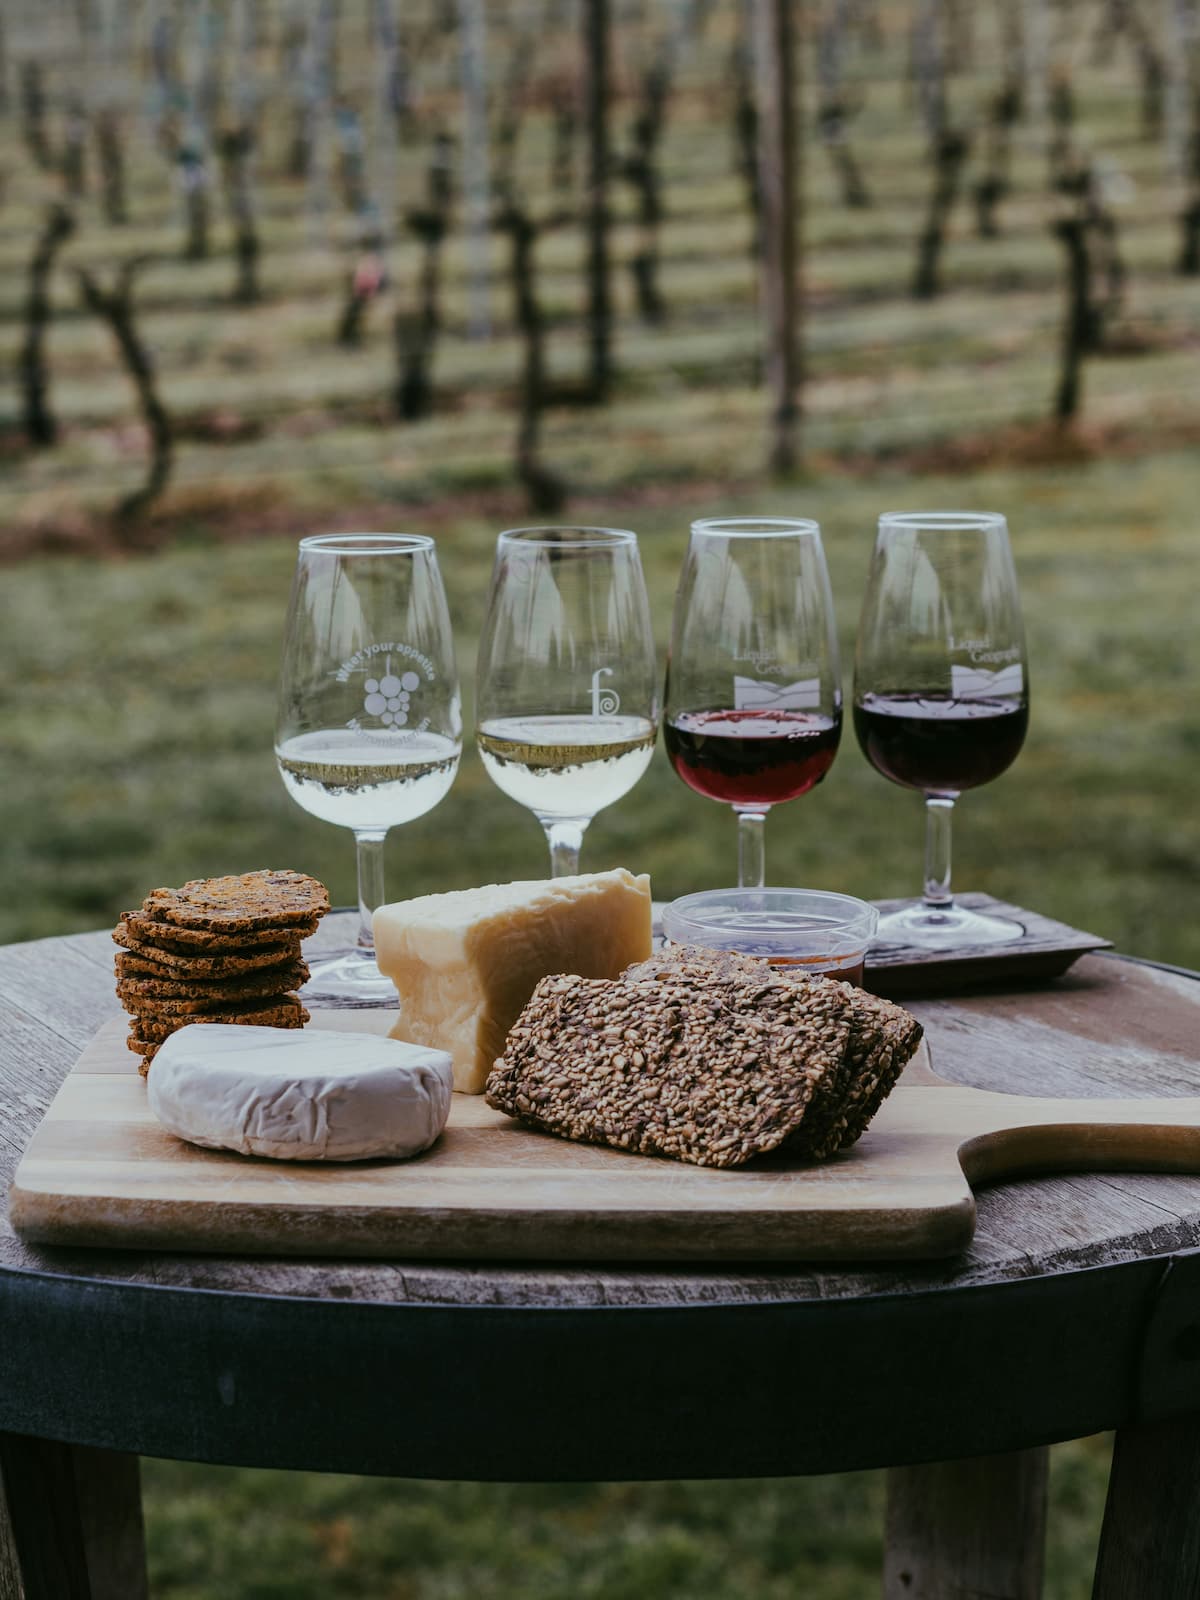 Quatro taças de vinho em uma mesa junto com pães em uma badeja de madeira